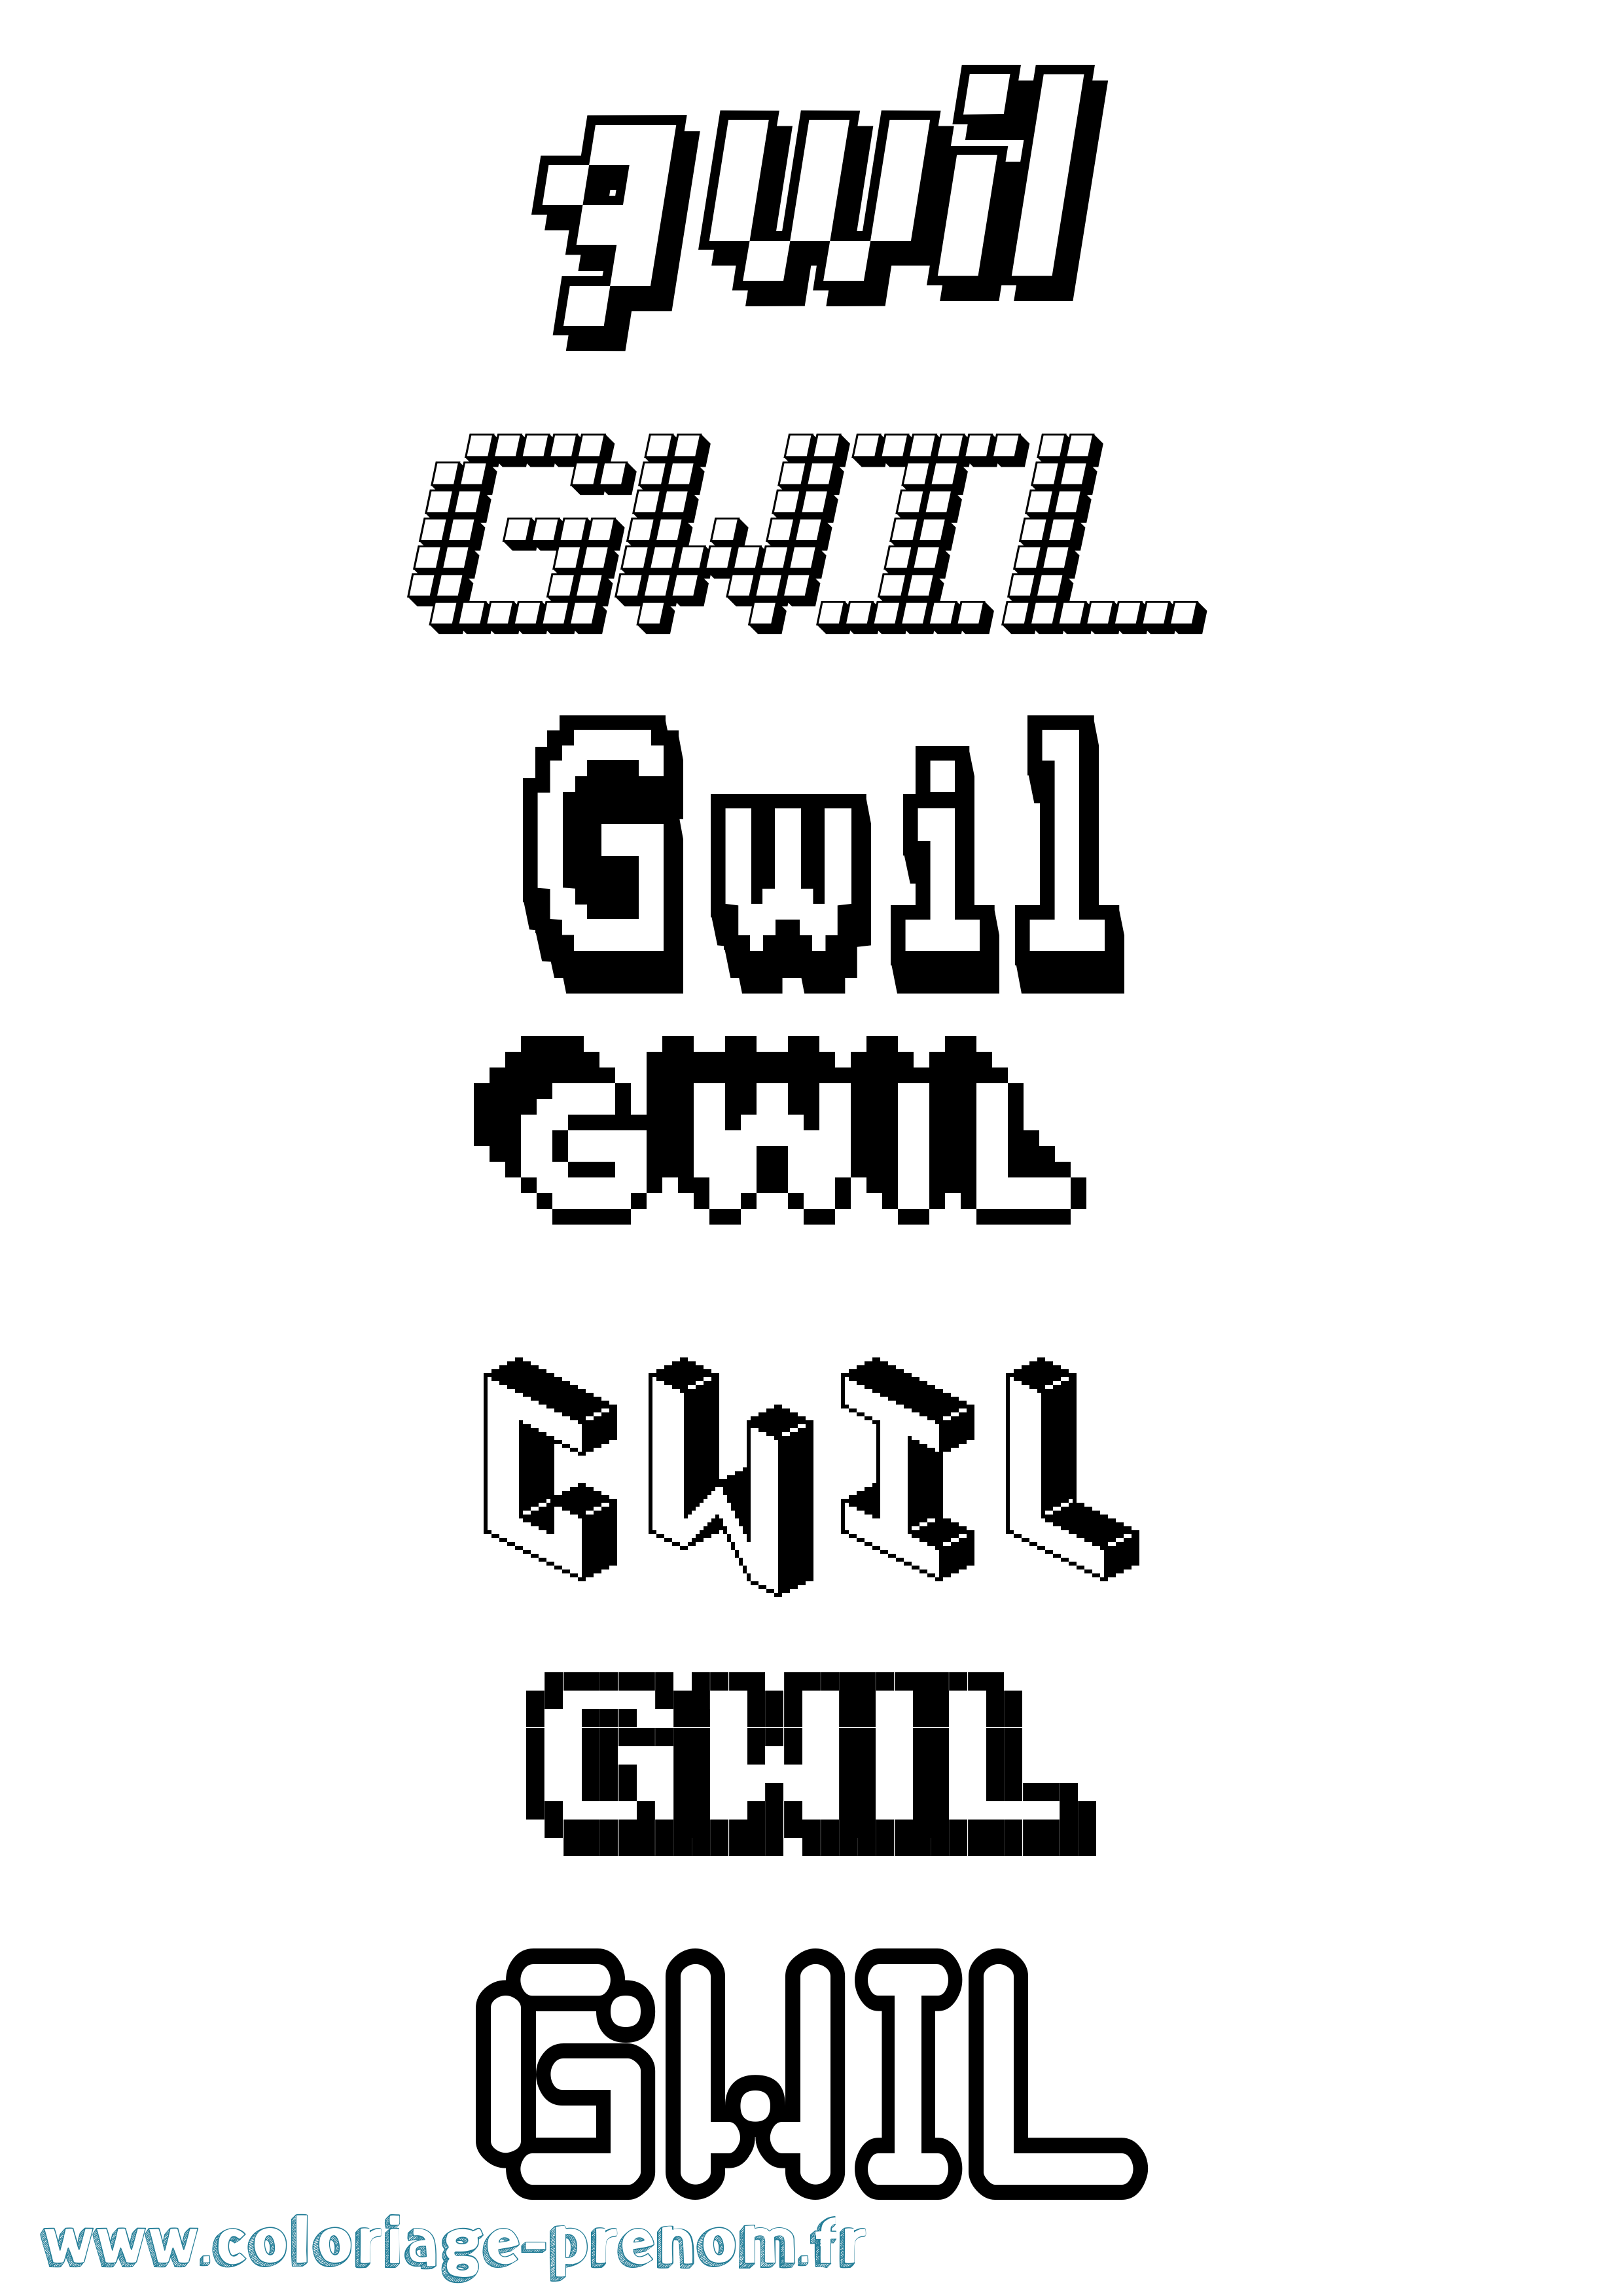 Coloriage prénom Gwil Pixel